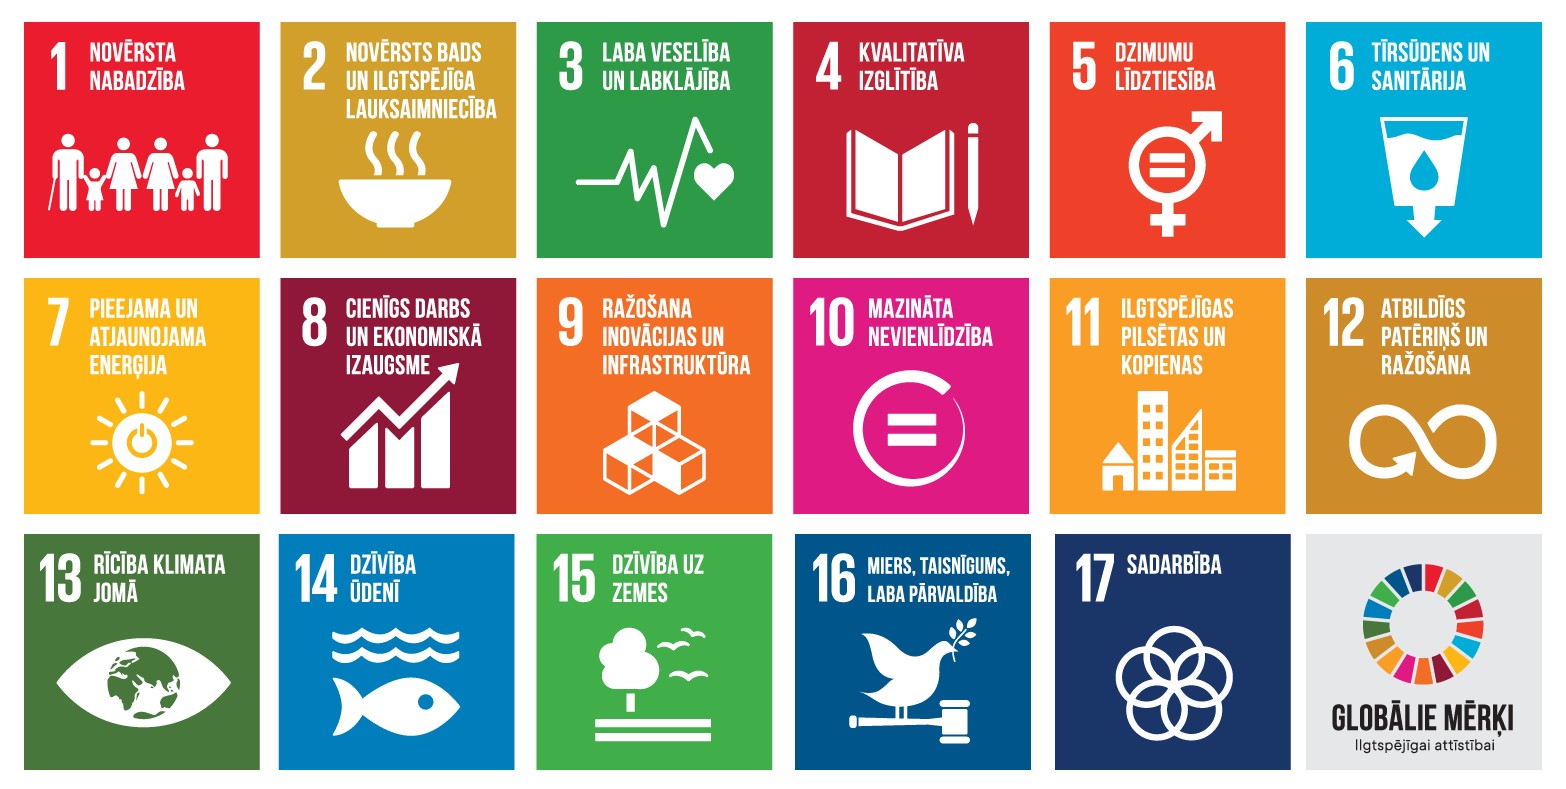 17 ANO Ilgtspējīgas attīstības mērķu ikonas ar tekstiem latviešu valodā ar mērķi apzīmējošiem attēliem